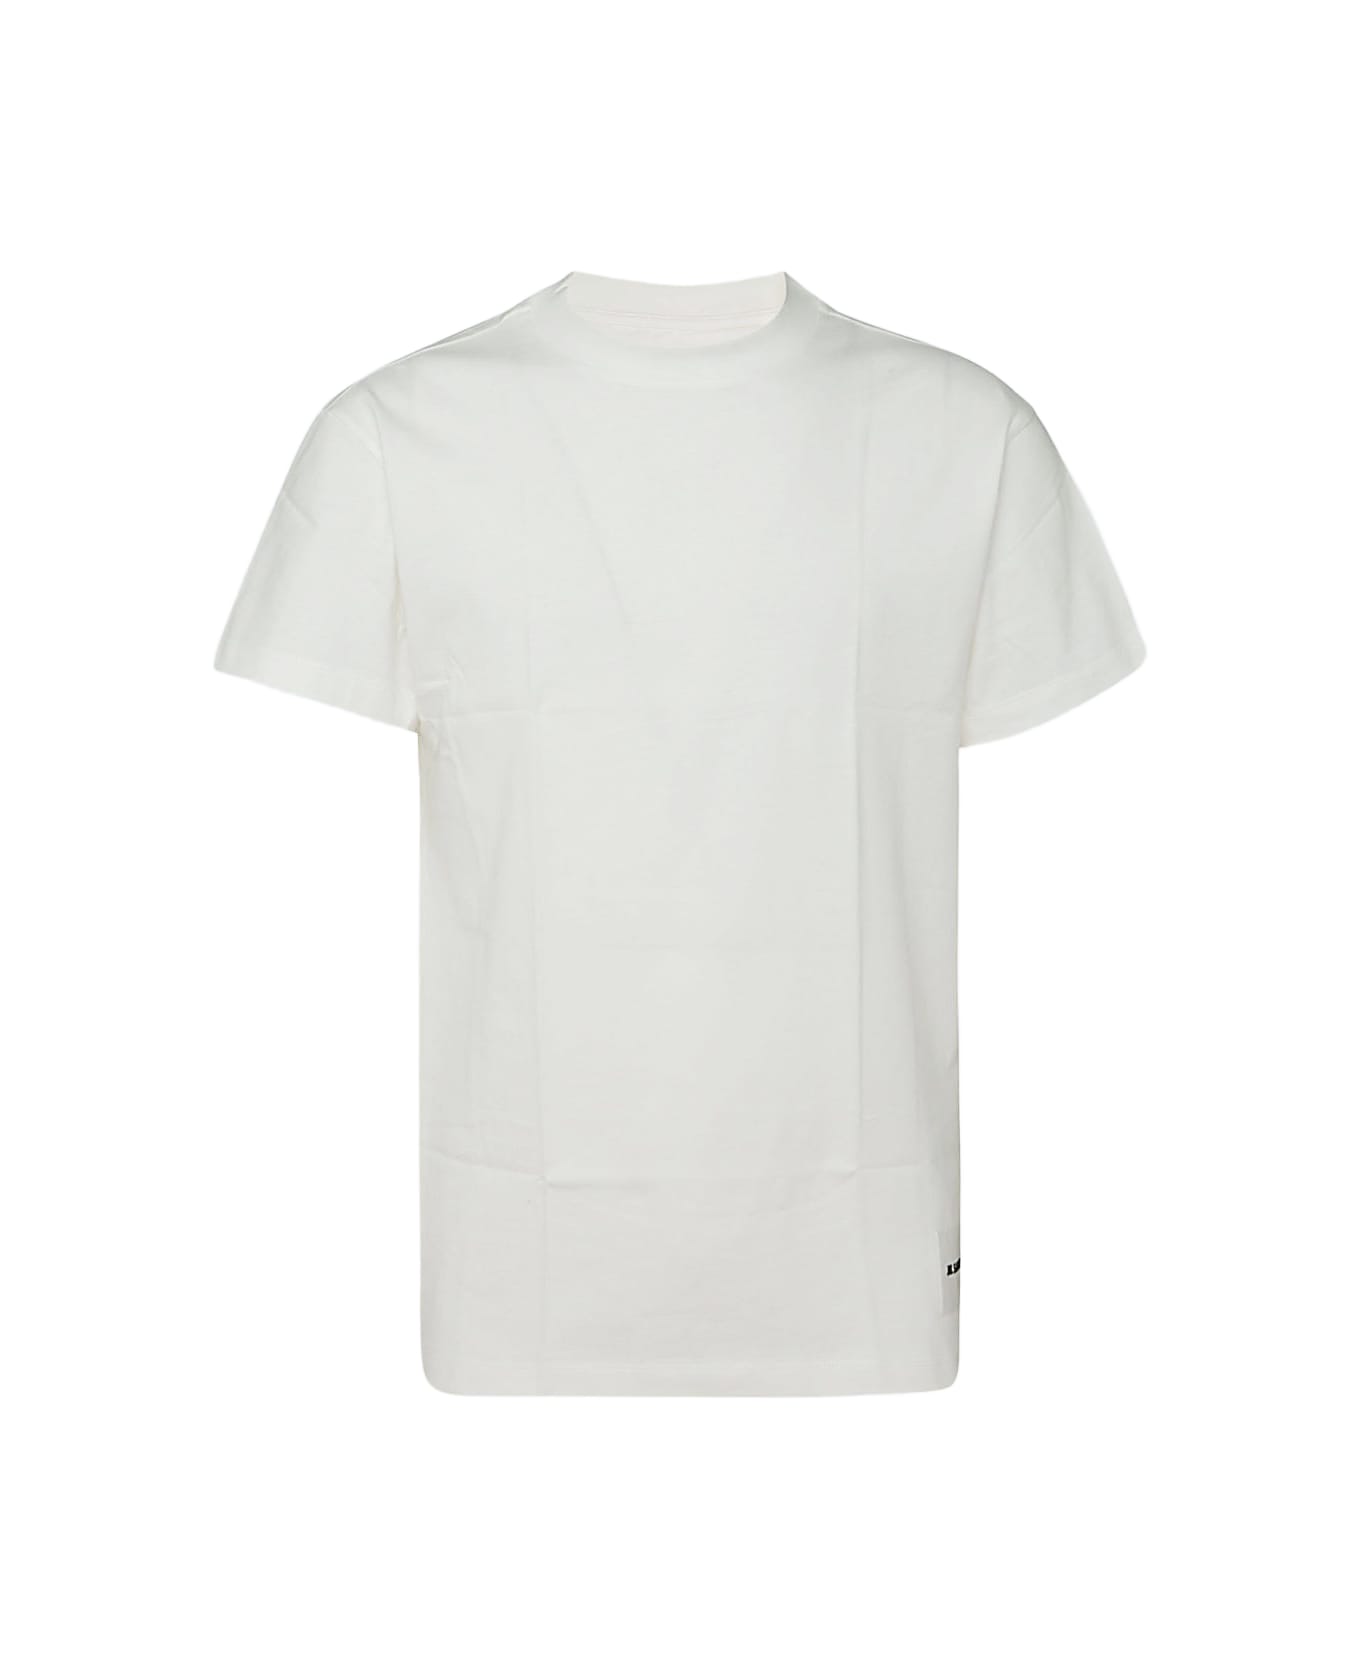 Jil Sander White Cotton T-shirt Set - WHITE/WHITE/WHITE